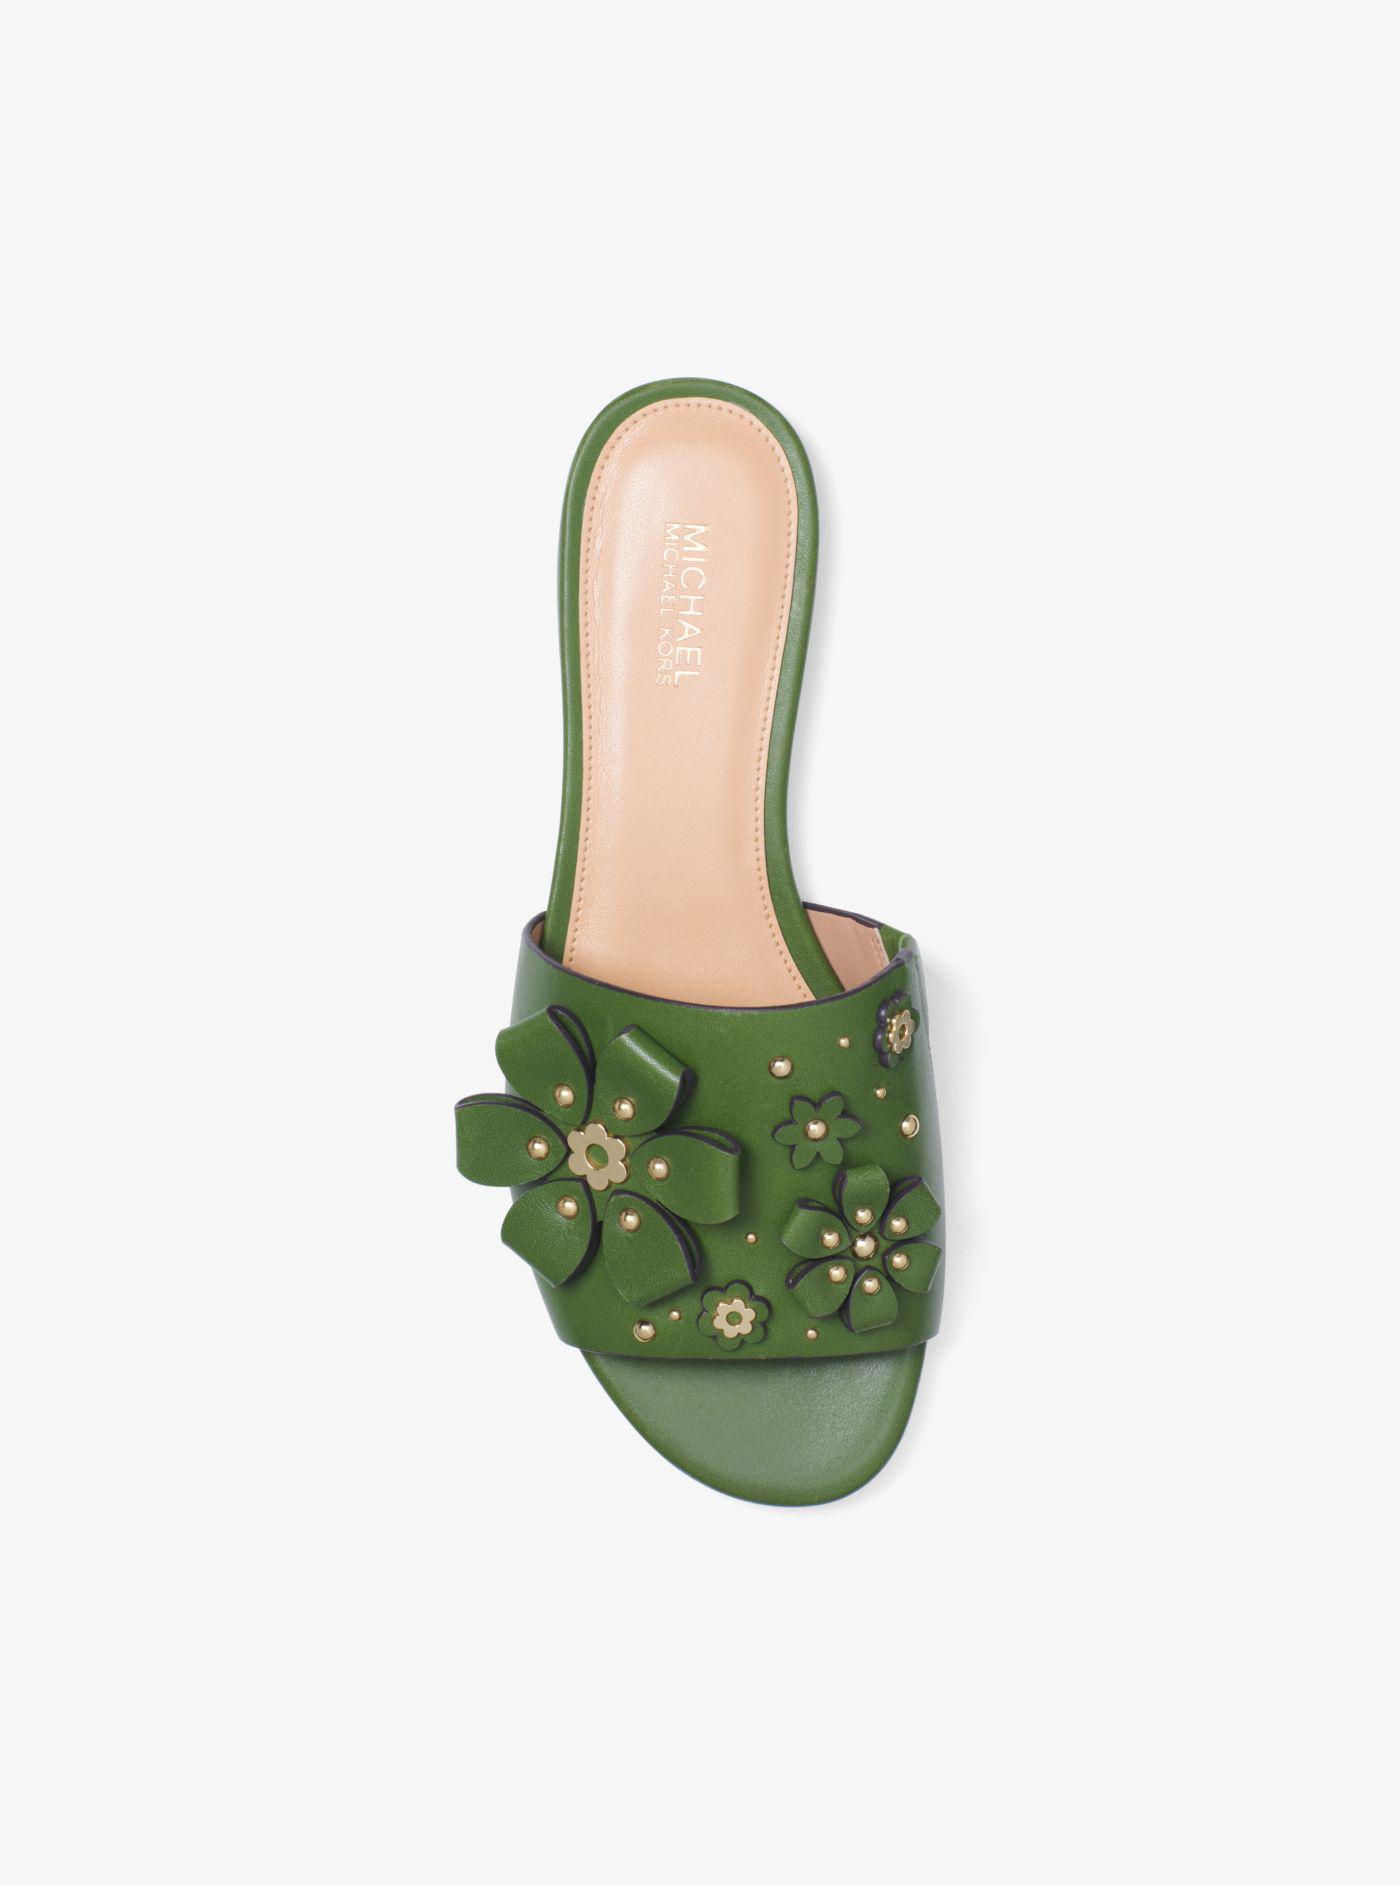 Michael Kors Tara Floral Embellished Leather Slide in Green | Lyst